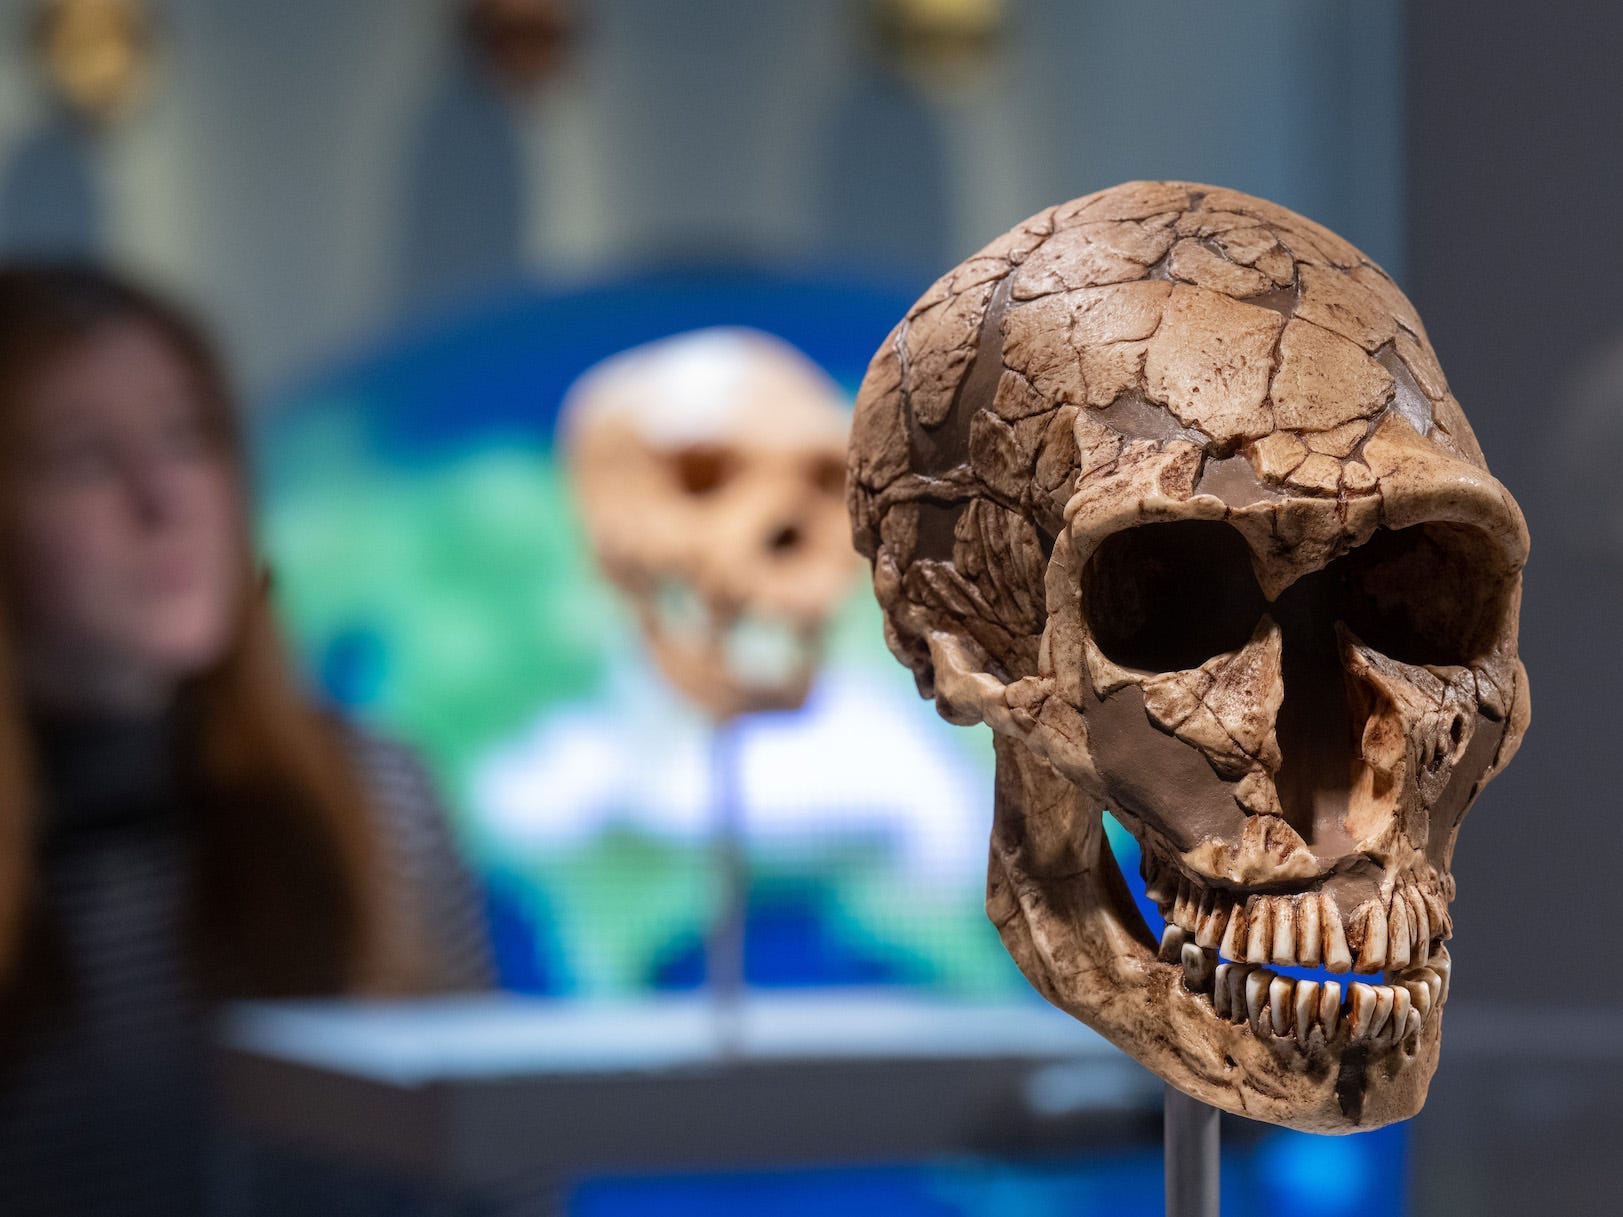 Im Vordergrund ist der Schädel eines Neandertalers zu sehen, der Abguss ist teilweise und fehlende Teile des Schädels sind ausgefüllt. Der Schädel ist in einem Museum ausgestellt, im Hintergrund ist eine Person zu sehen, die die Schädel betrachtet.